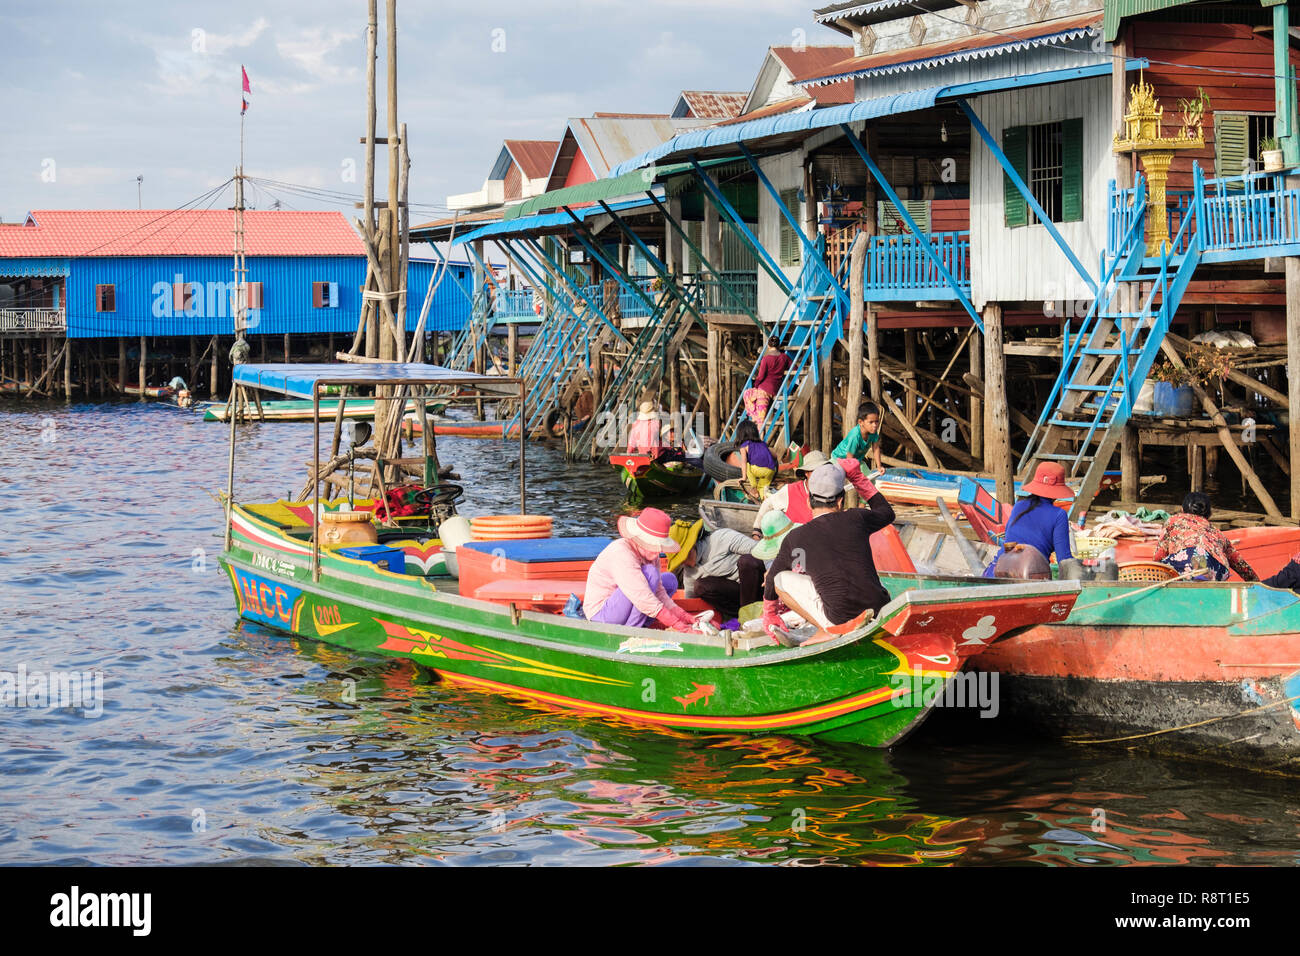 Die Menschen in den Booten waren Verkauf außerhalb Häuser auf Stelzen in schwimmenden Dorf in den Tonle Sap See. Kampong Phluk Siem Reap Kambodscha Indochina Asien Stockfoto